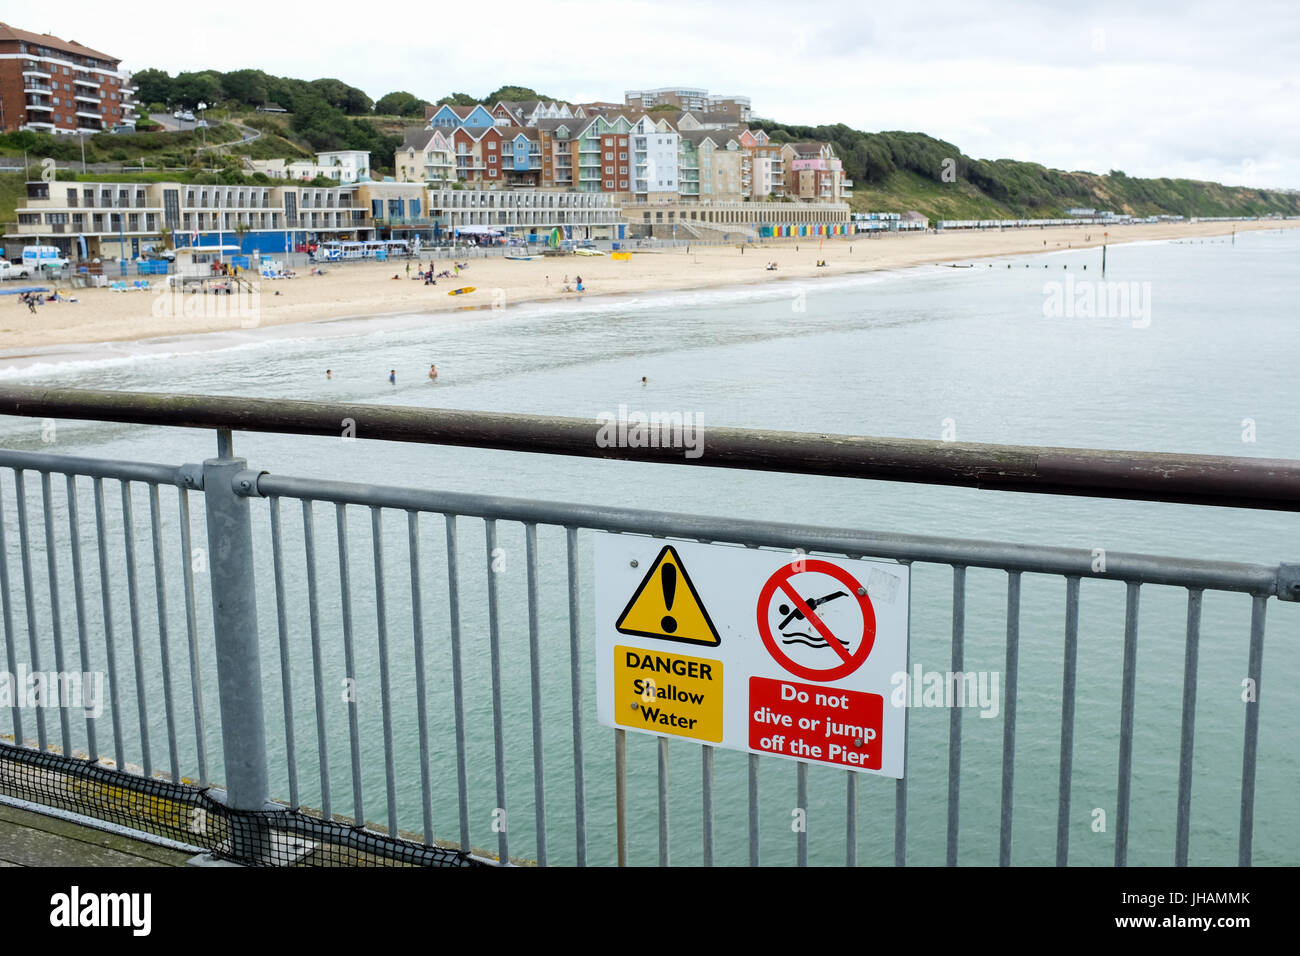 Un signe avise les personnes de l'eau de mer peu profonde et de dire aux gens de ne pas plonger ou sauter du Pier (jetée près de Boscombe Bournemouth, dans le Dorset, Angleterre). Banque D'Images